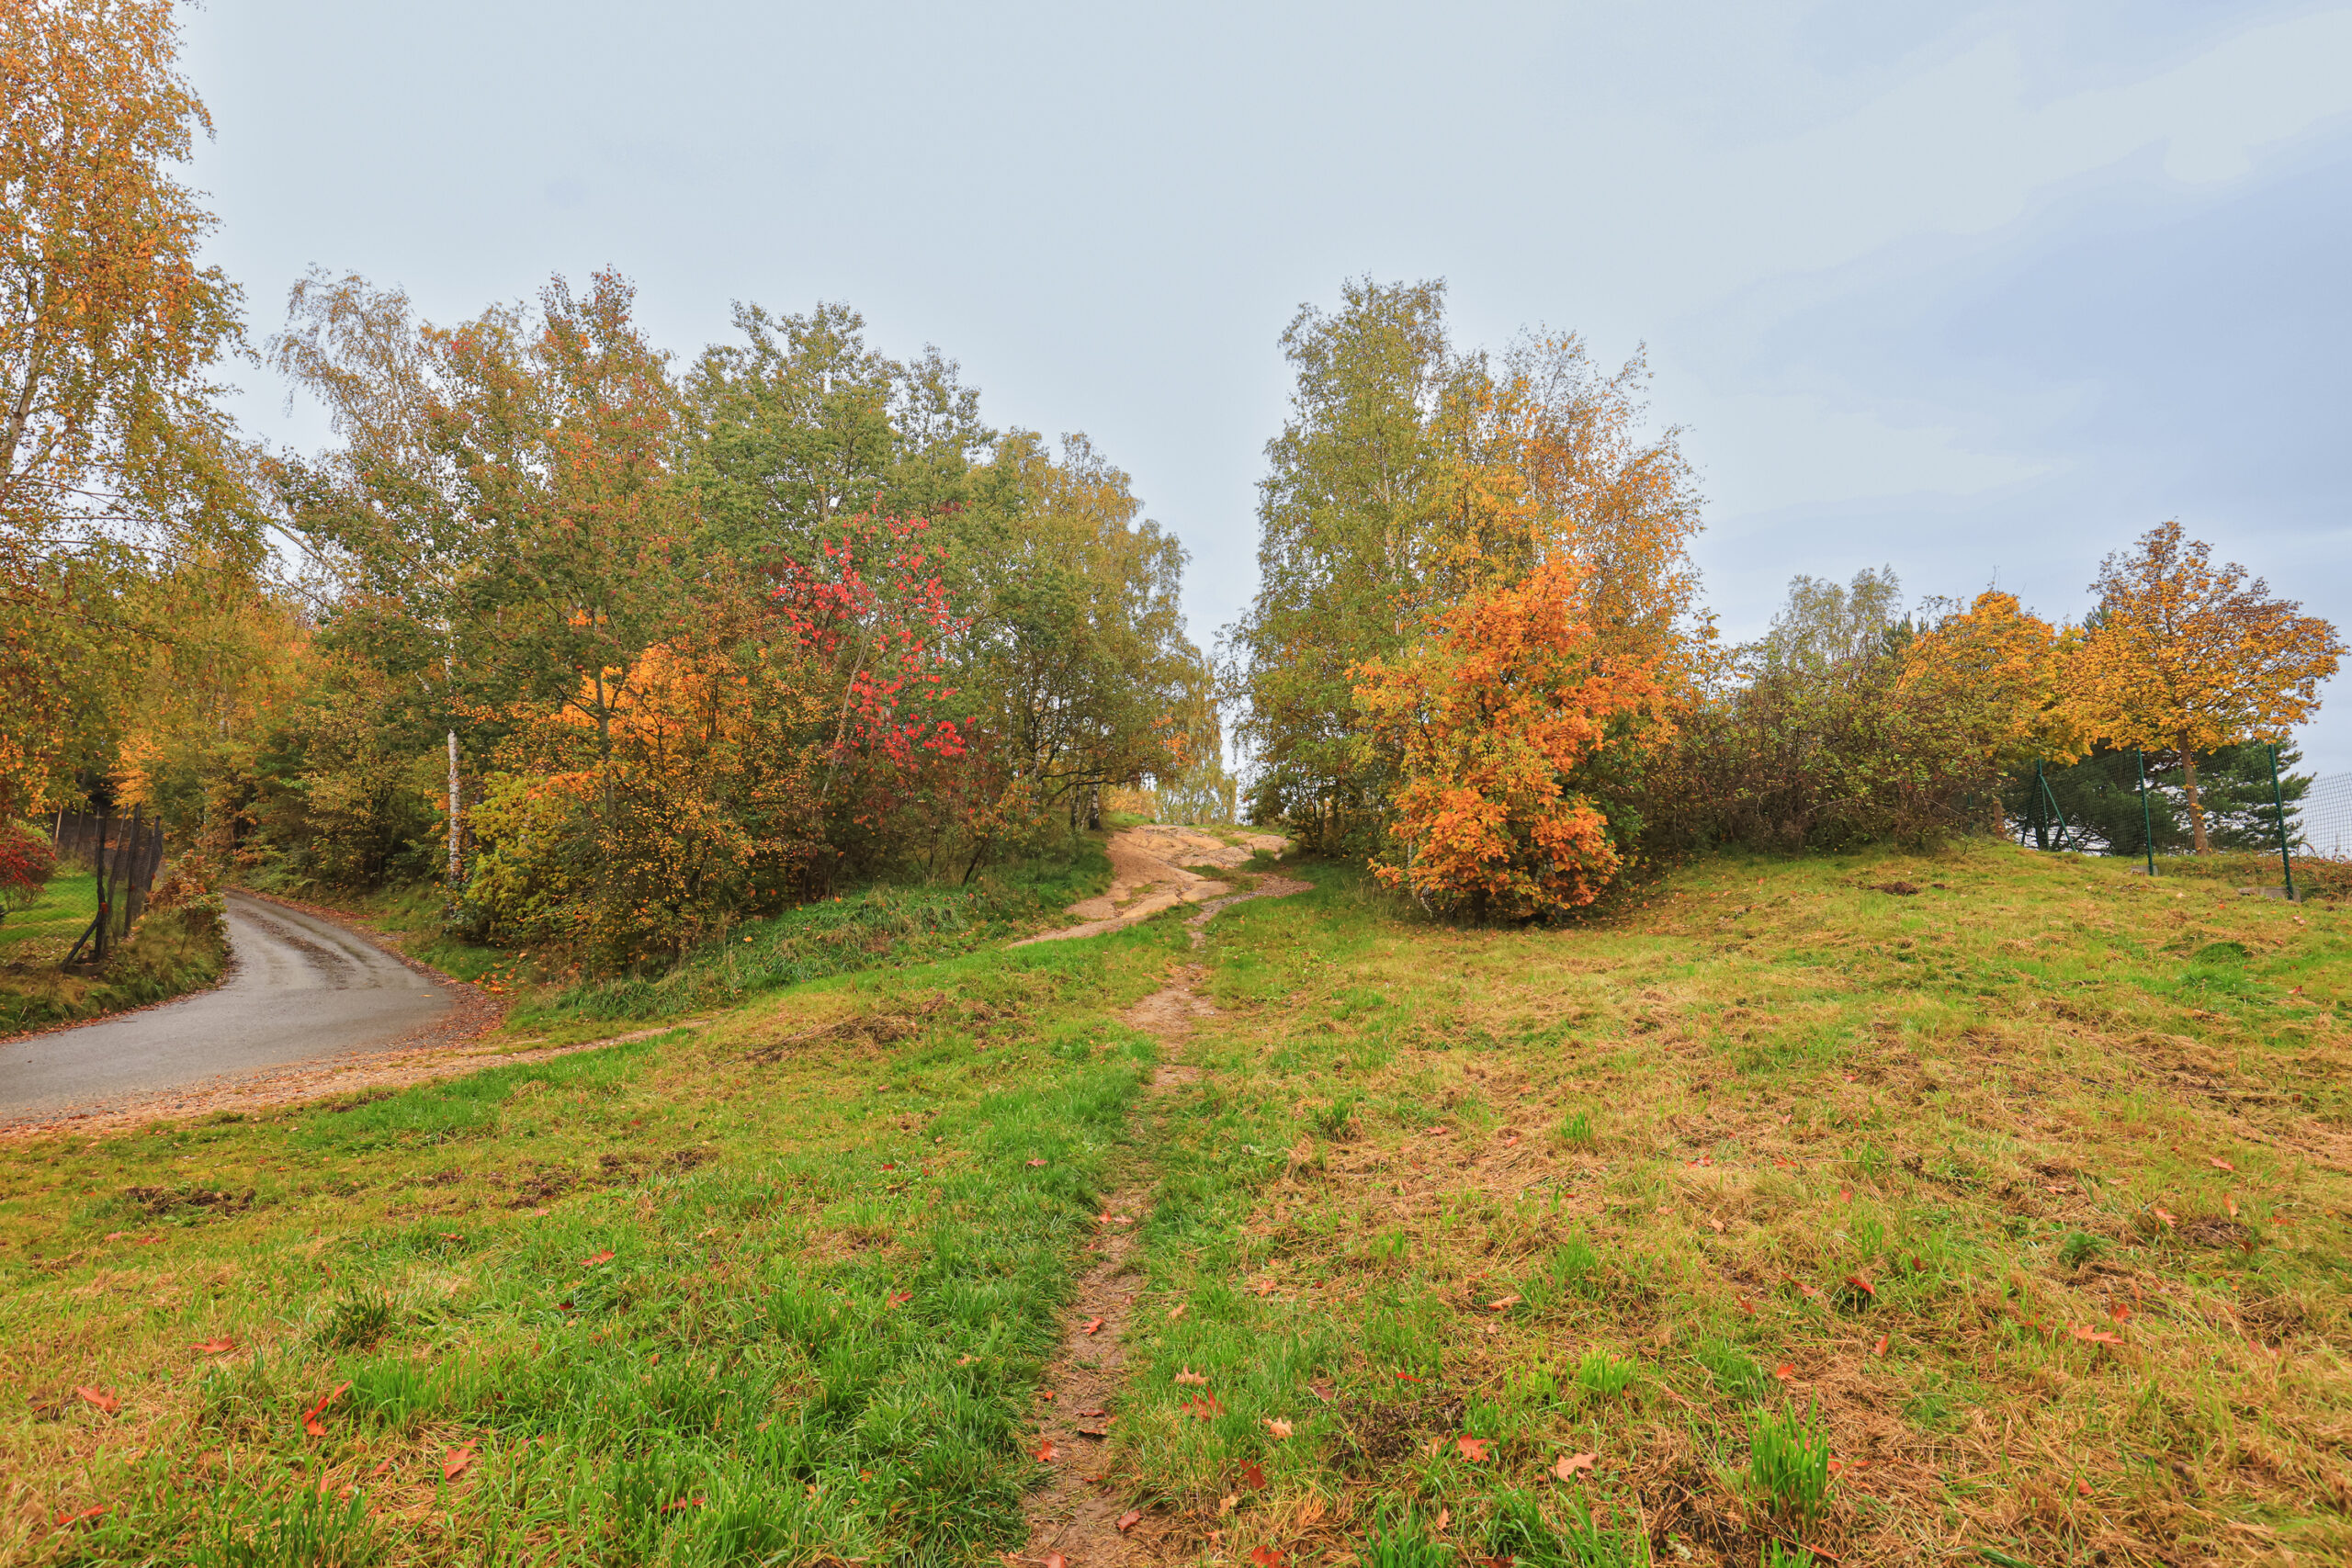 <h1>Vrch Mikulka</h1><br />
Nízké návrší s dřevinami v podzimních barvách, v popředí travnatý porost s pěšinou směřující do středu snímku (na vrch), levou částí prochází úzká místní komunikace a nezpevněná cesta.